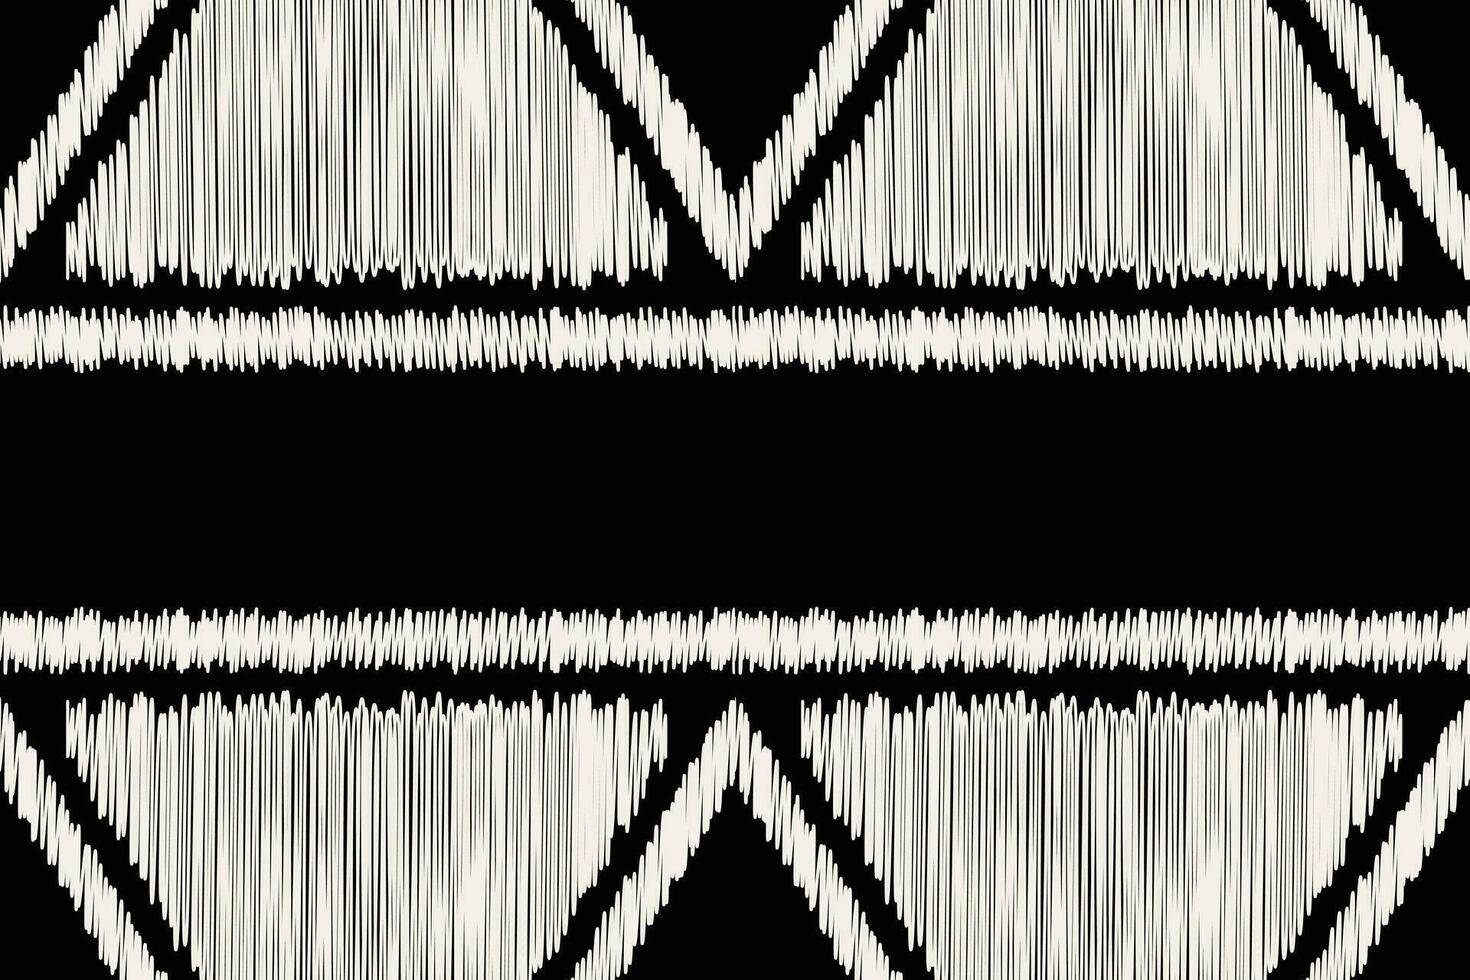 etnisch ikat kleding stof patroon meetkundig stijl.afrikaans ikat borduurwerk etnisch oosters patroon zwart achtergrond. abstract,vector,illustratie.textuur,kleding,lijst,decoratie,tapijt,motief. vector